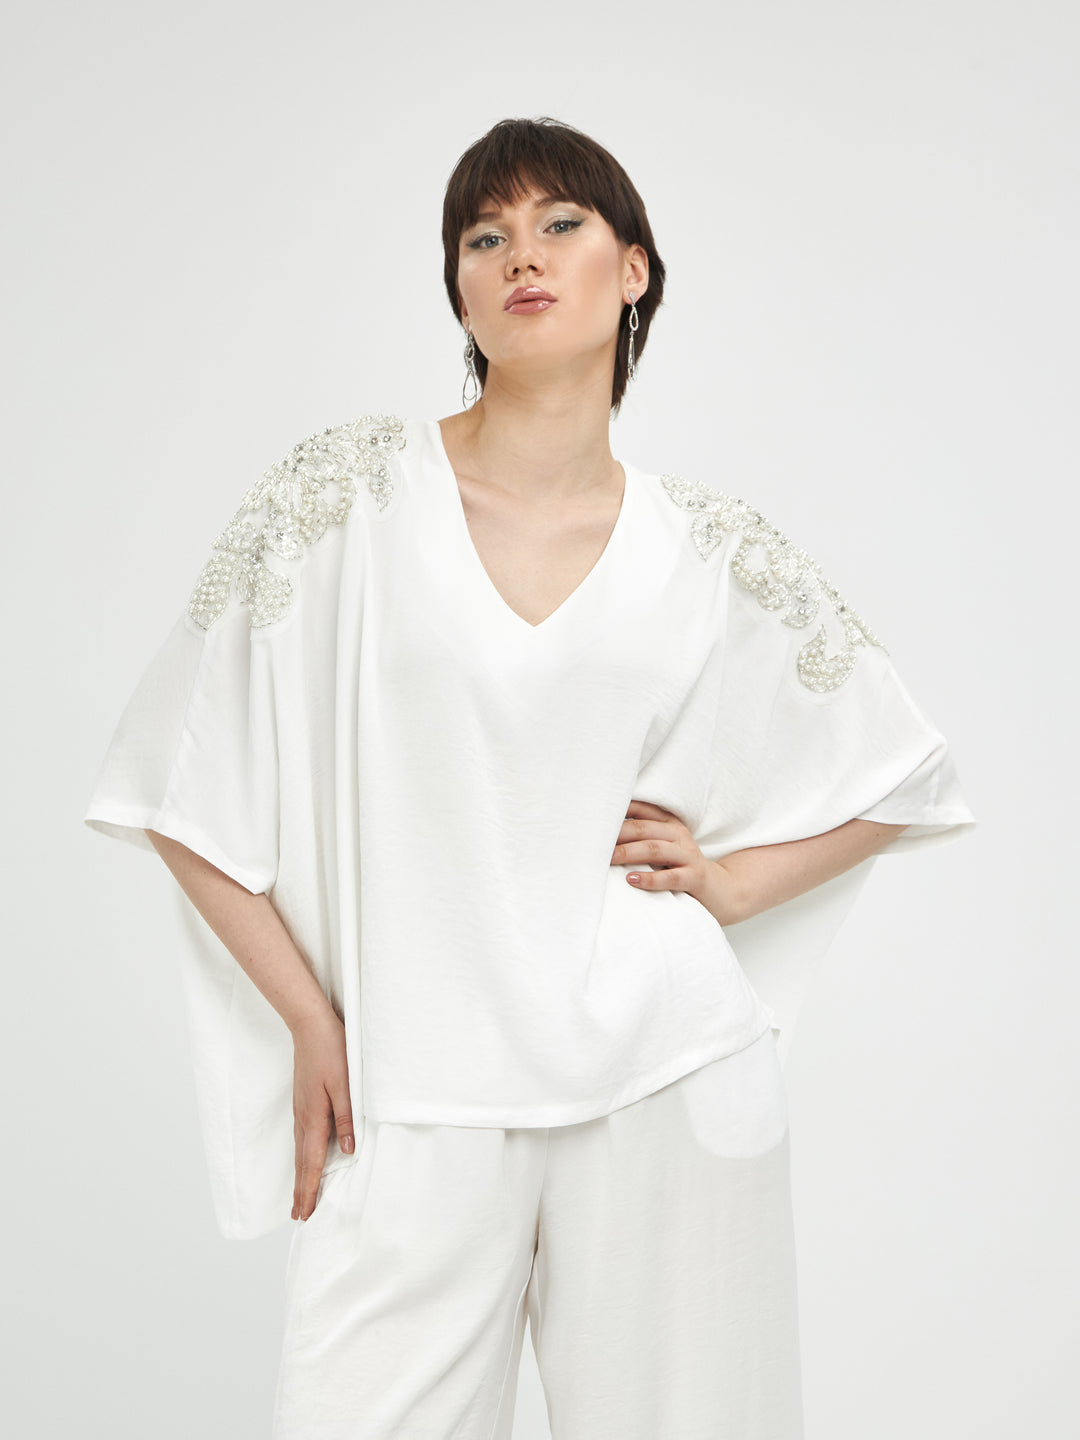 witte blouse met parelafwerking - mat fashion - 8101.1075-white - grote maten - dameskleding - kledingwinkel - herent - leuven